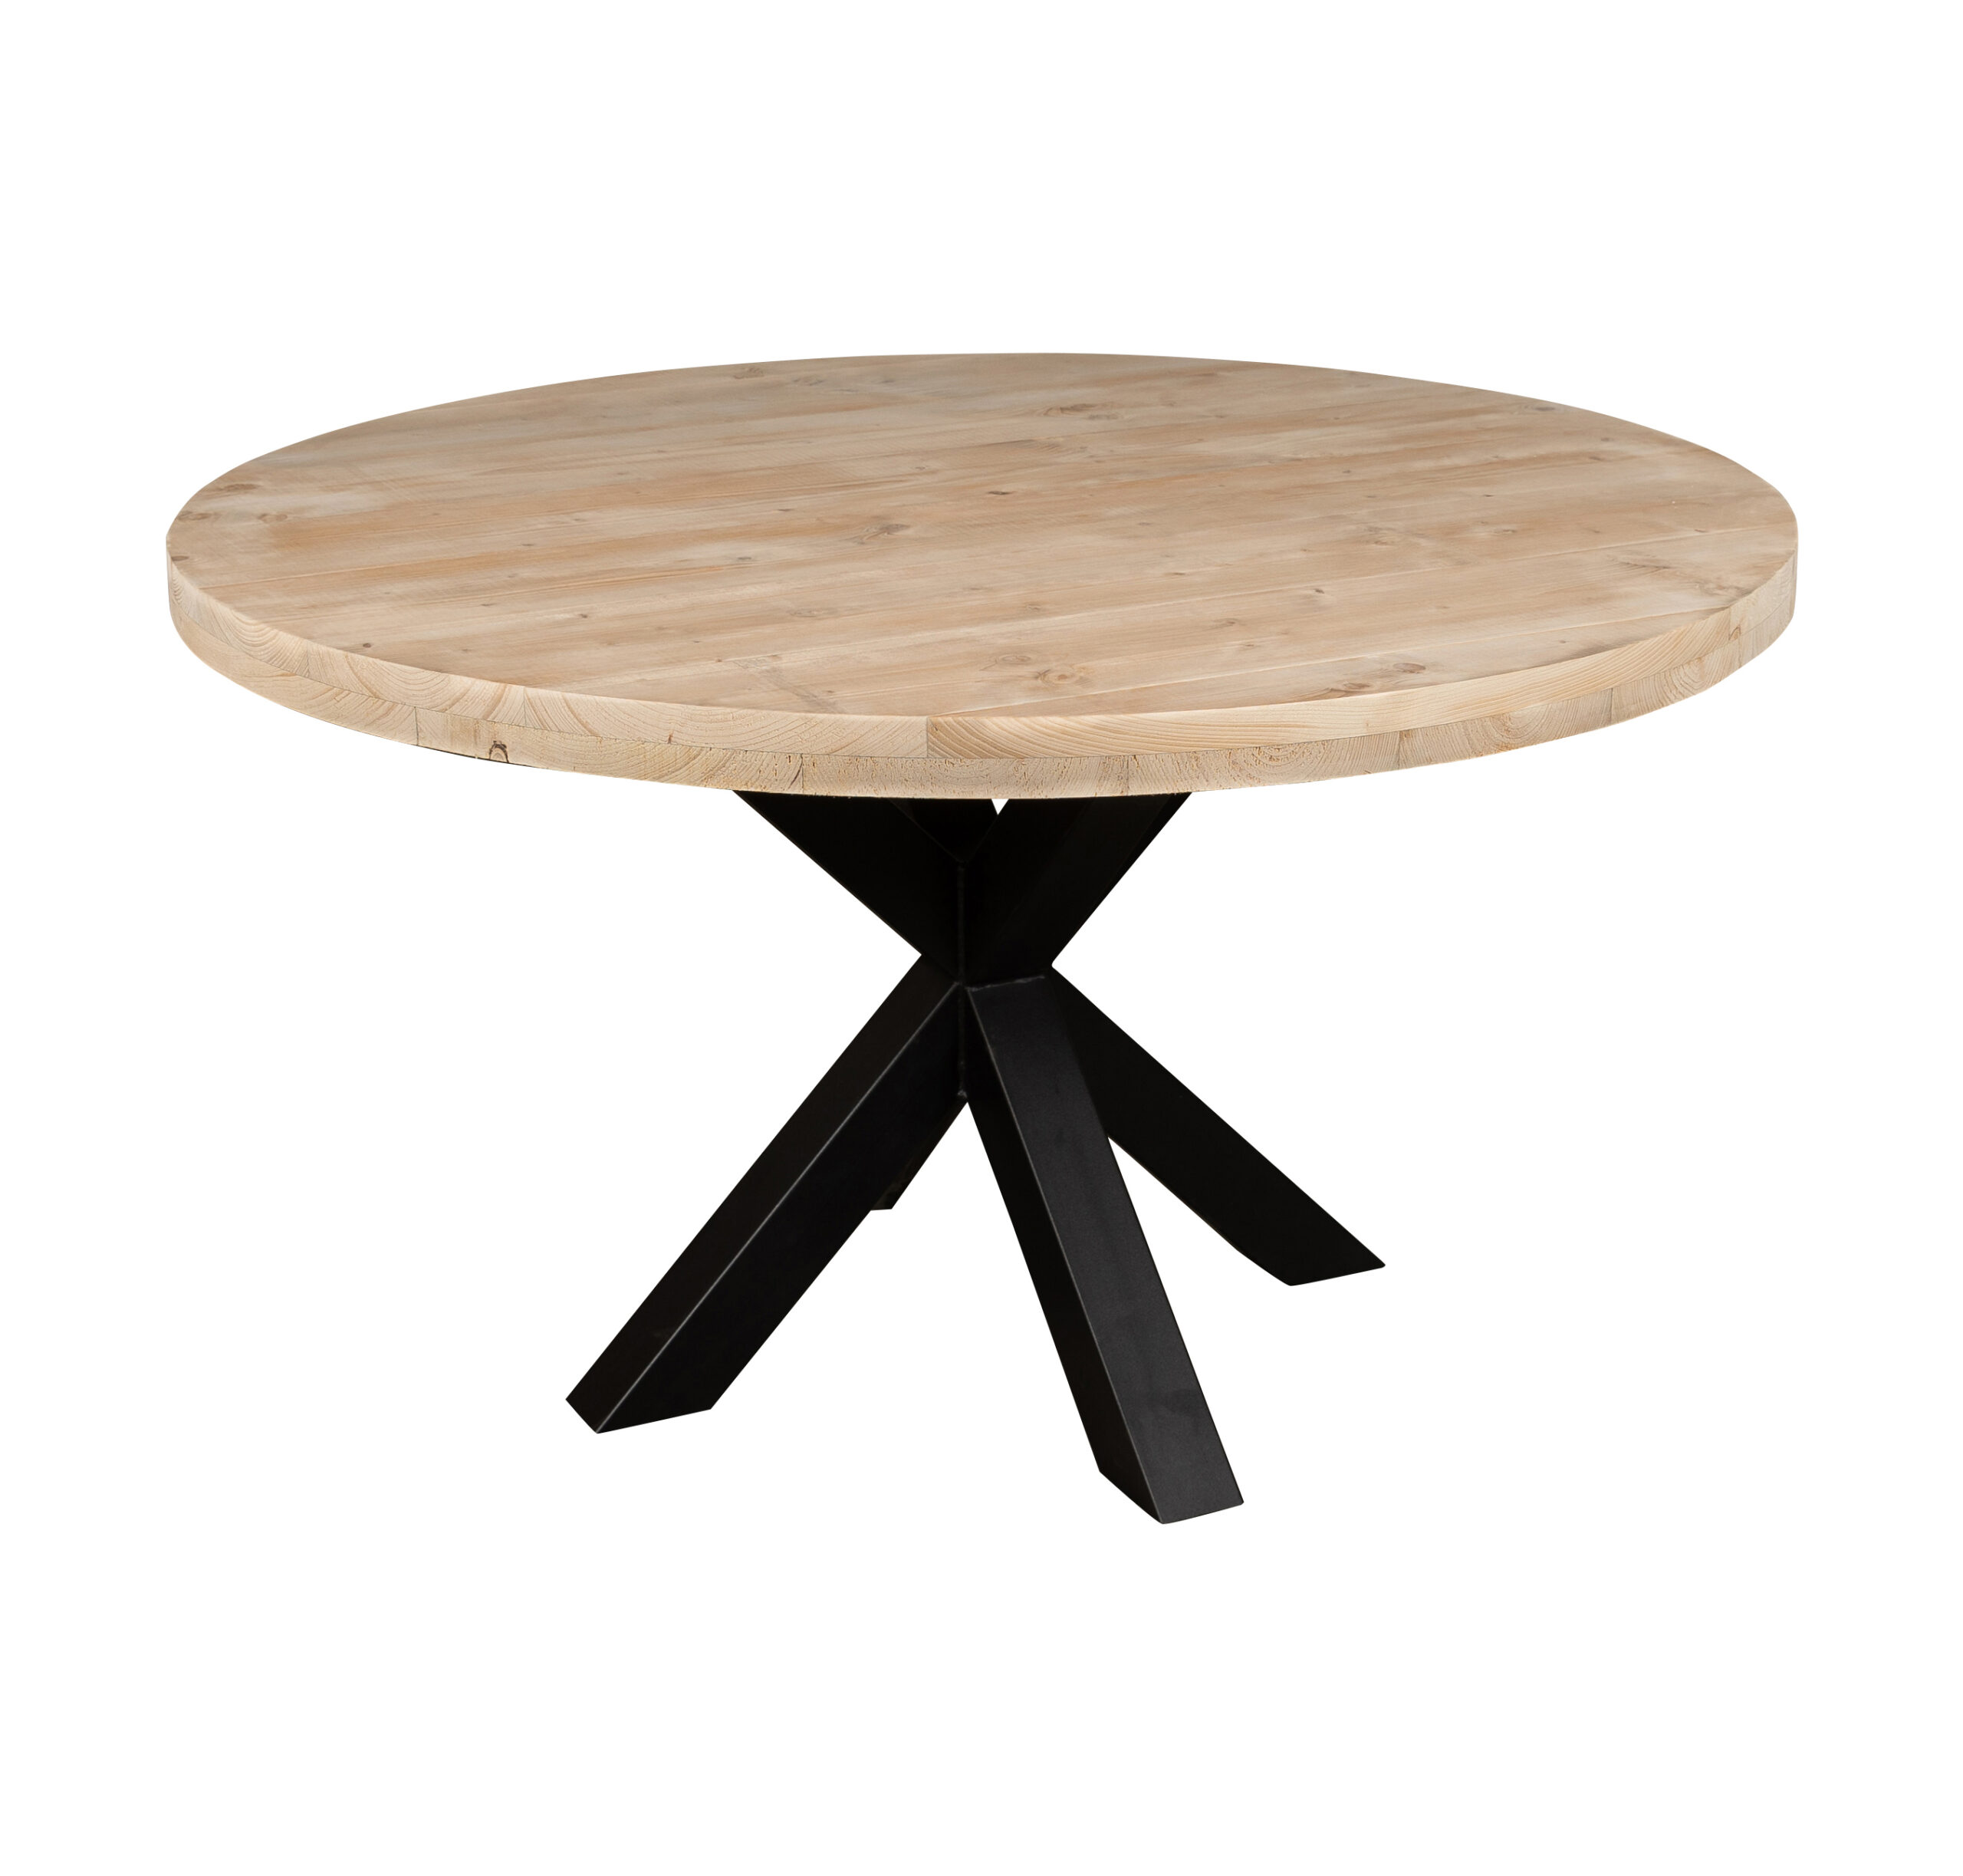 Waar Waar Bedrijf Ronde tuintafel - Mooie ronde houten tafels voor buiten - op maat!